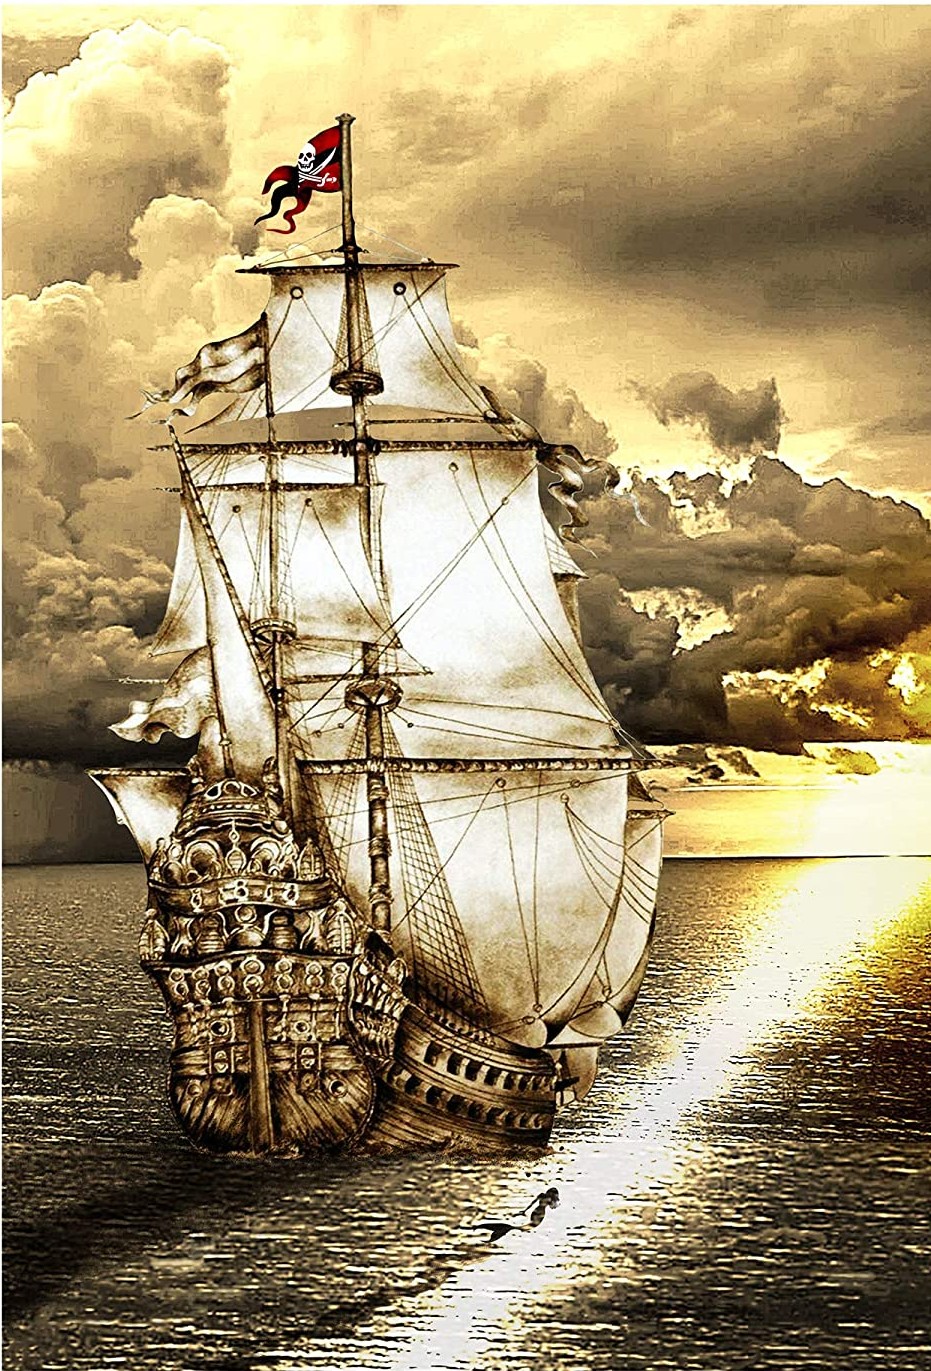 Forestillede sejl fra berygtede havangribere sejler til en smuk solnedgang i vandet på Amerikas territorium.